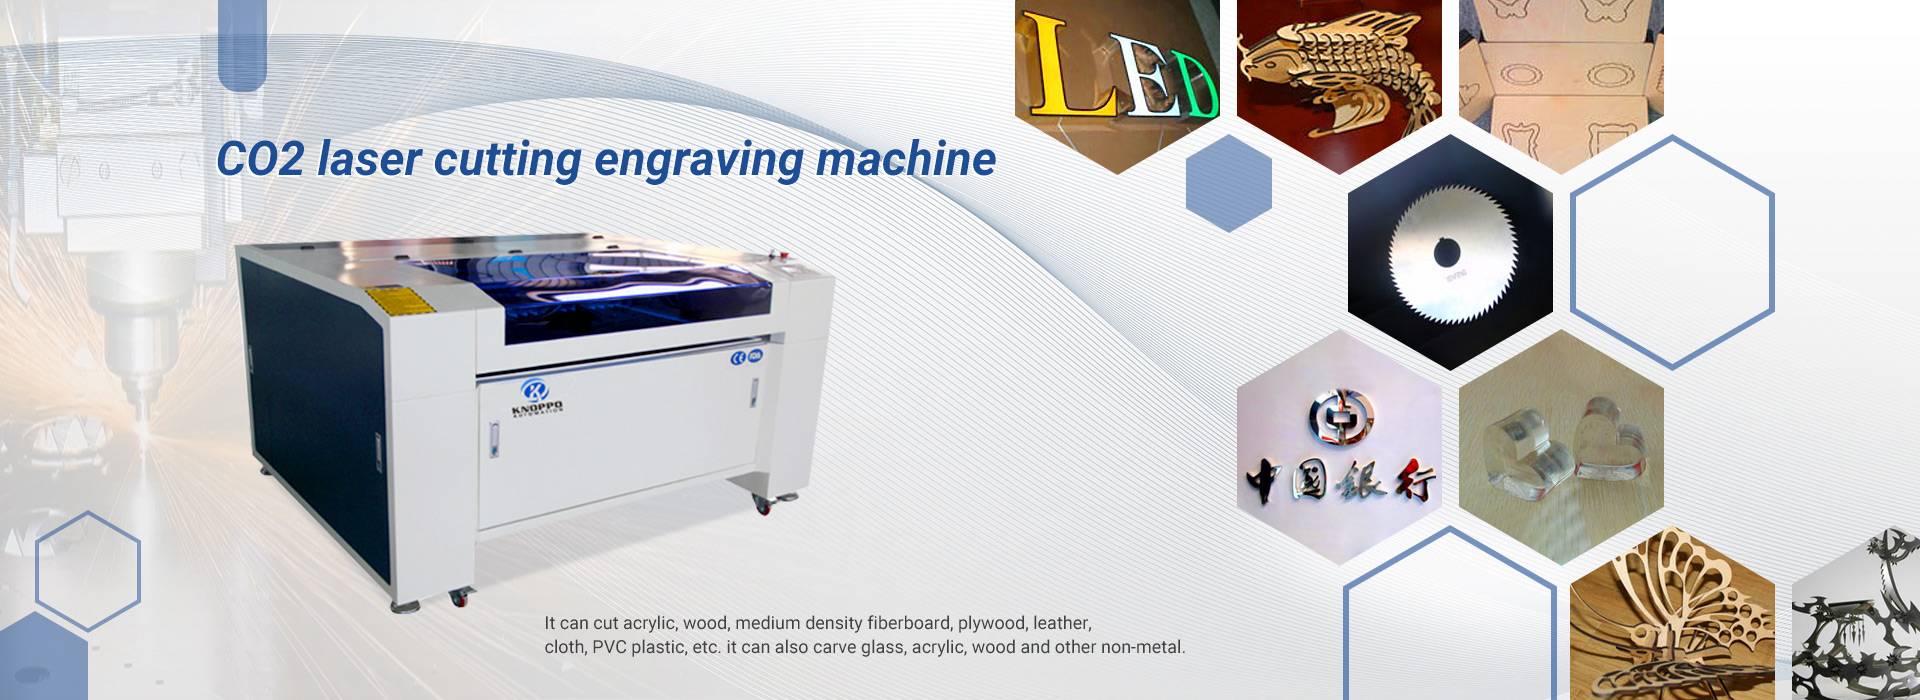 mesin co2 laser nglereni engraving